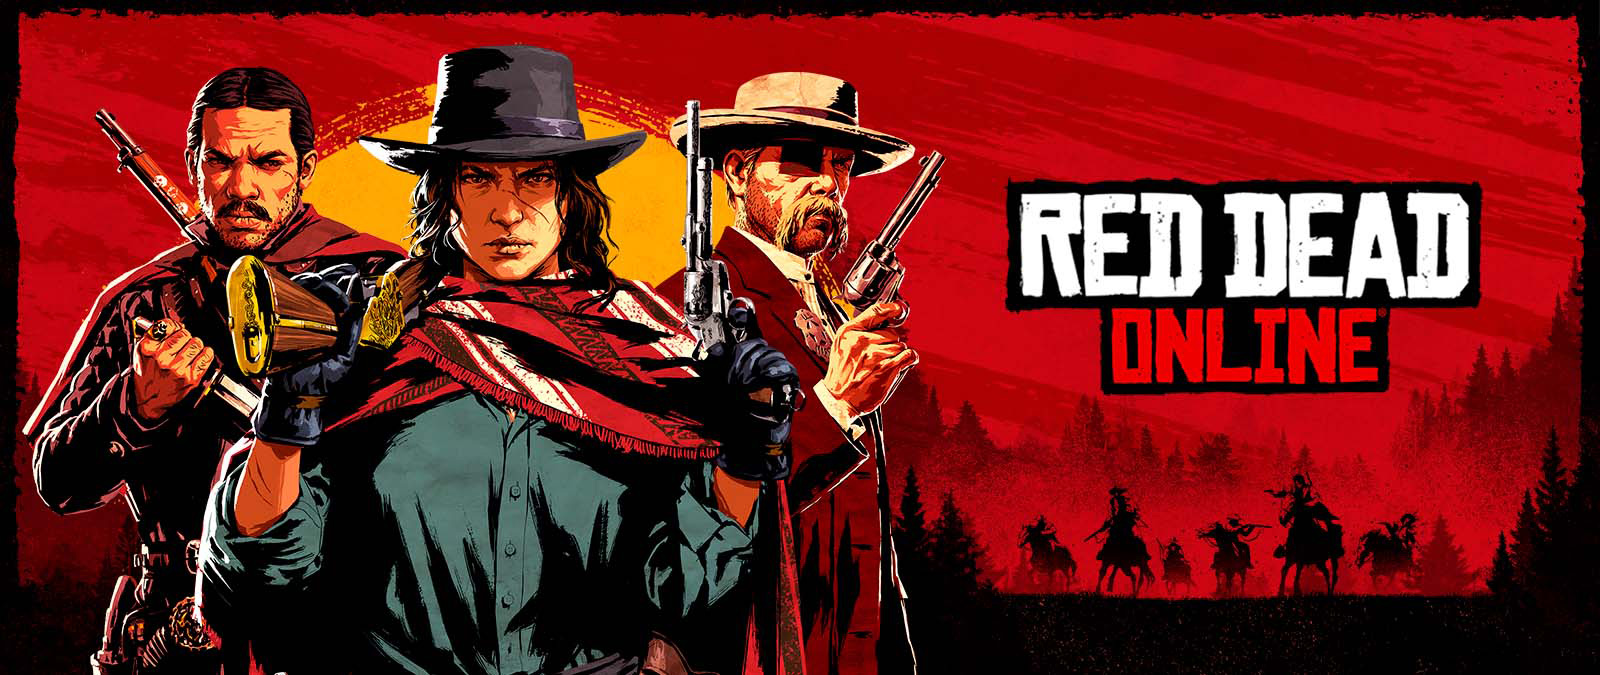 Red Dead Online. Tres personajes armados delante de una puesta de sol y sombras de otros personajes a caballo.